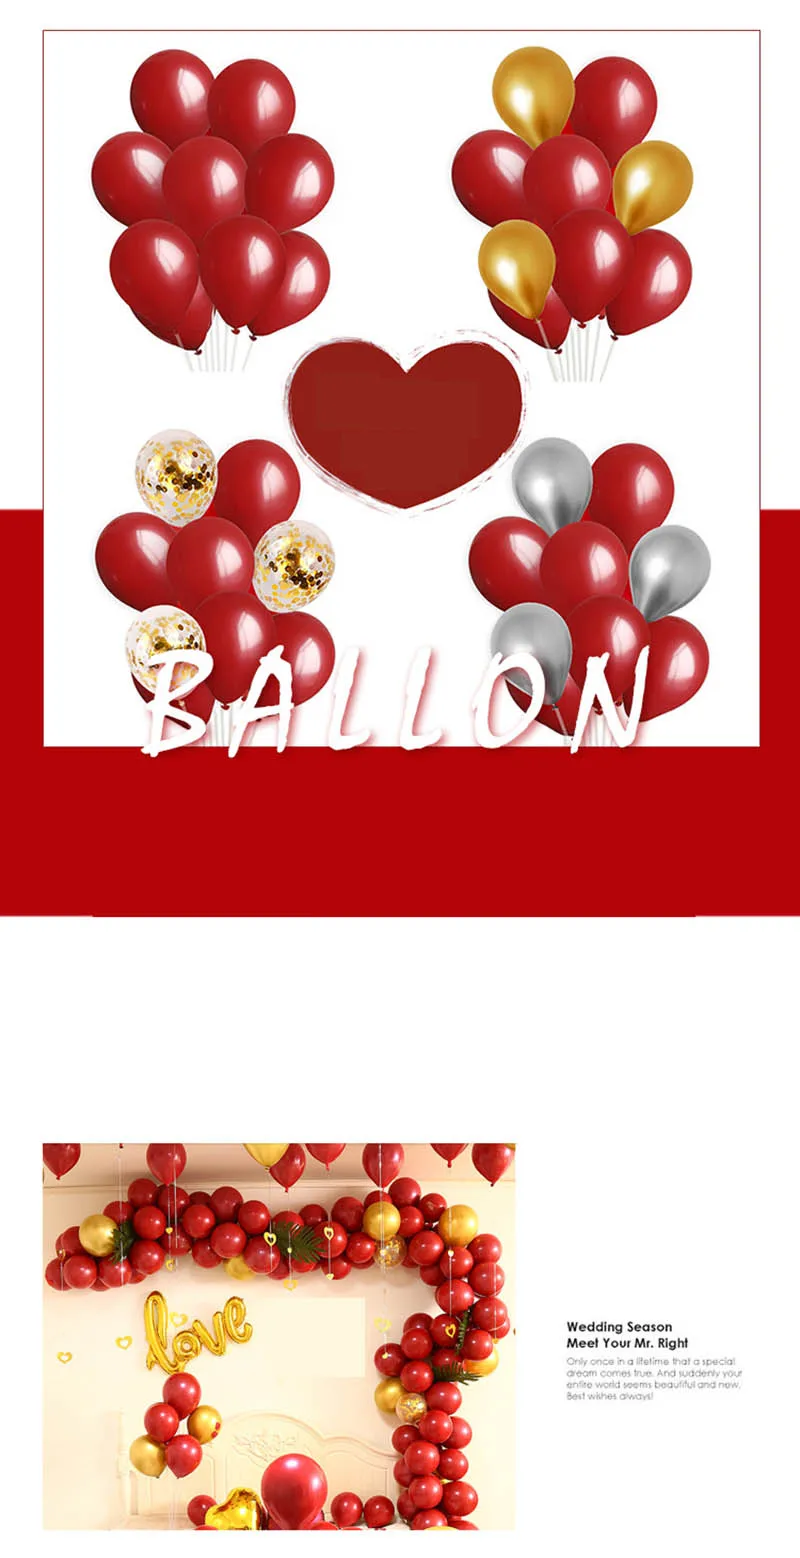 10 дюймов микс латексные шары красный агат гелий украшения на день рождения воздушные шары Дети Свадьба Вечеринка Babyshower тема Декор поставки